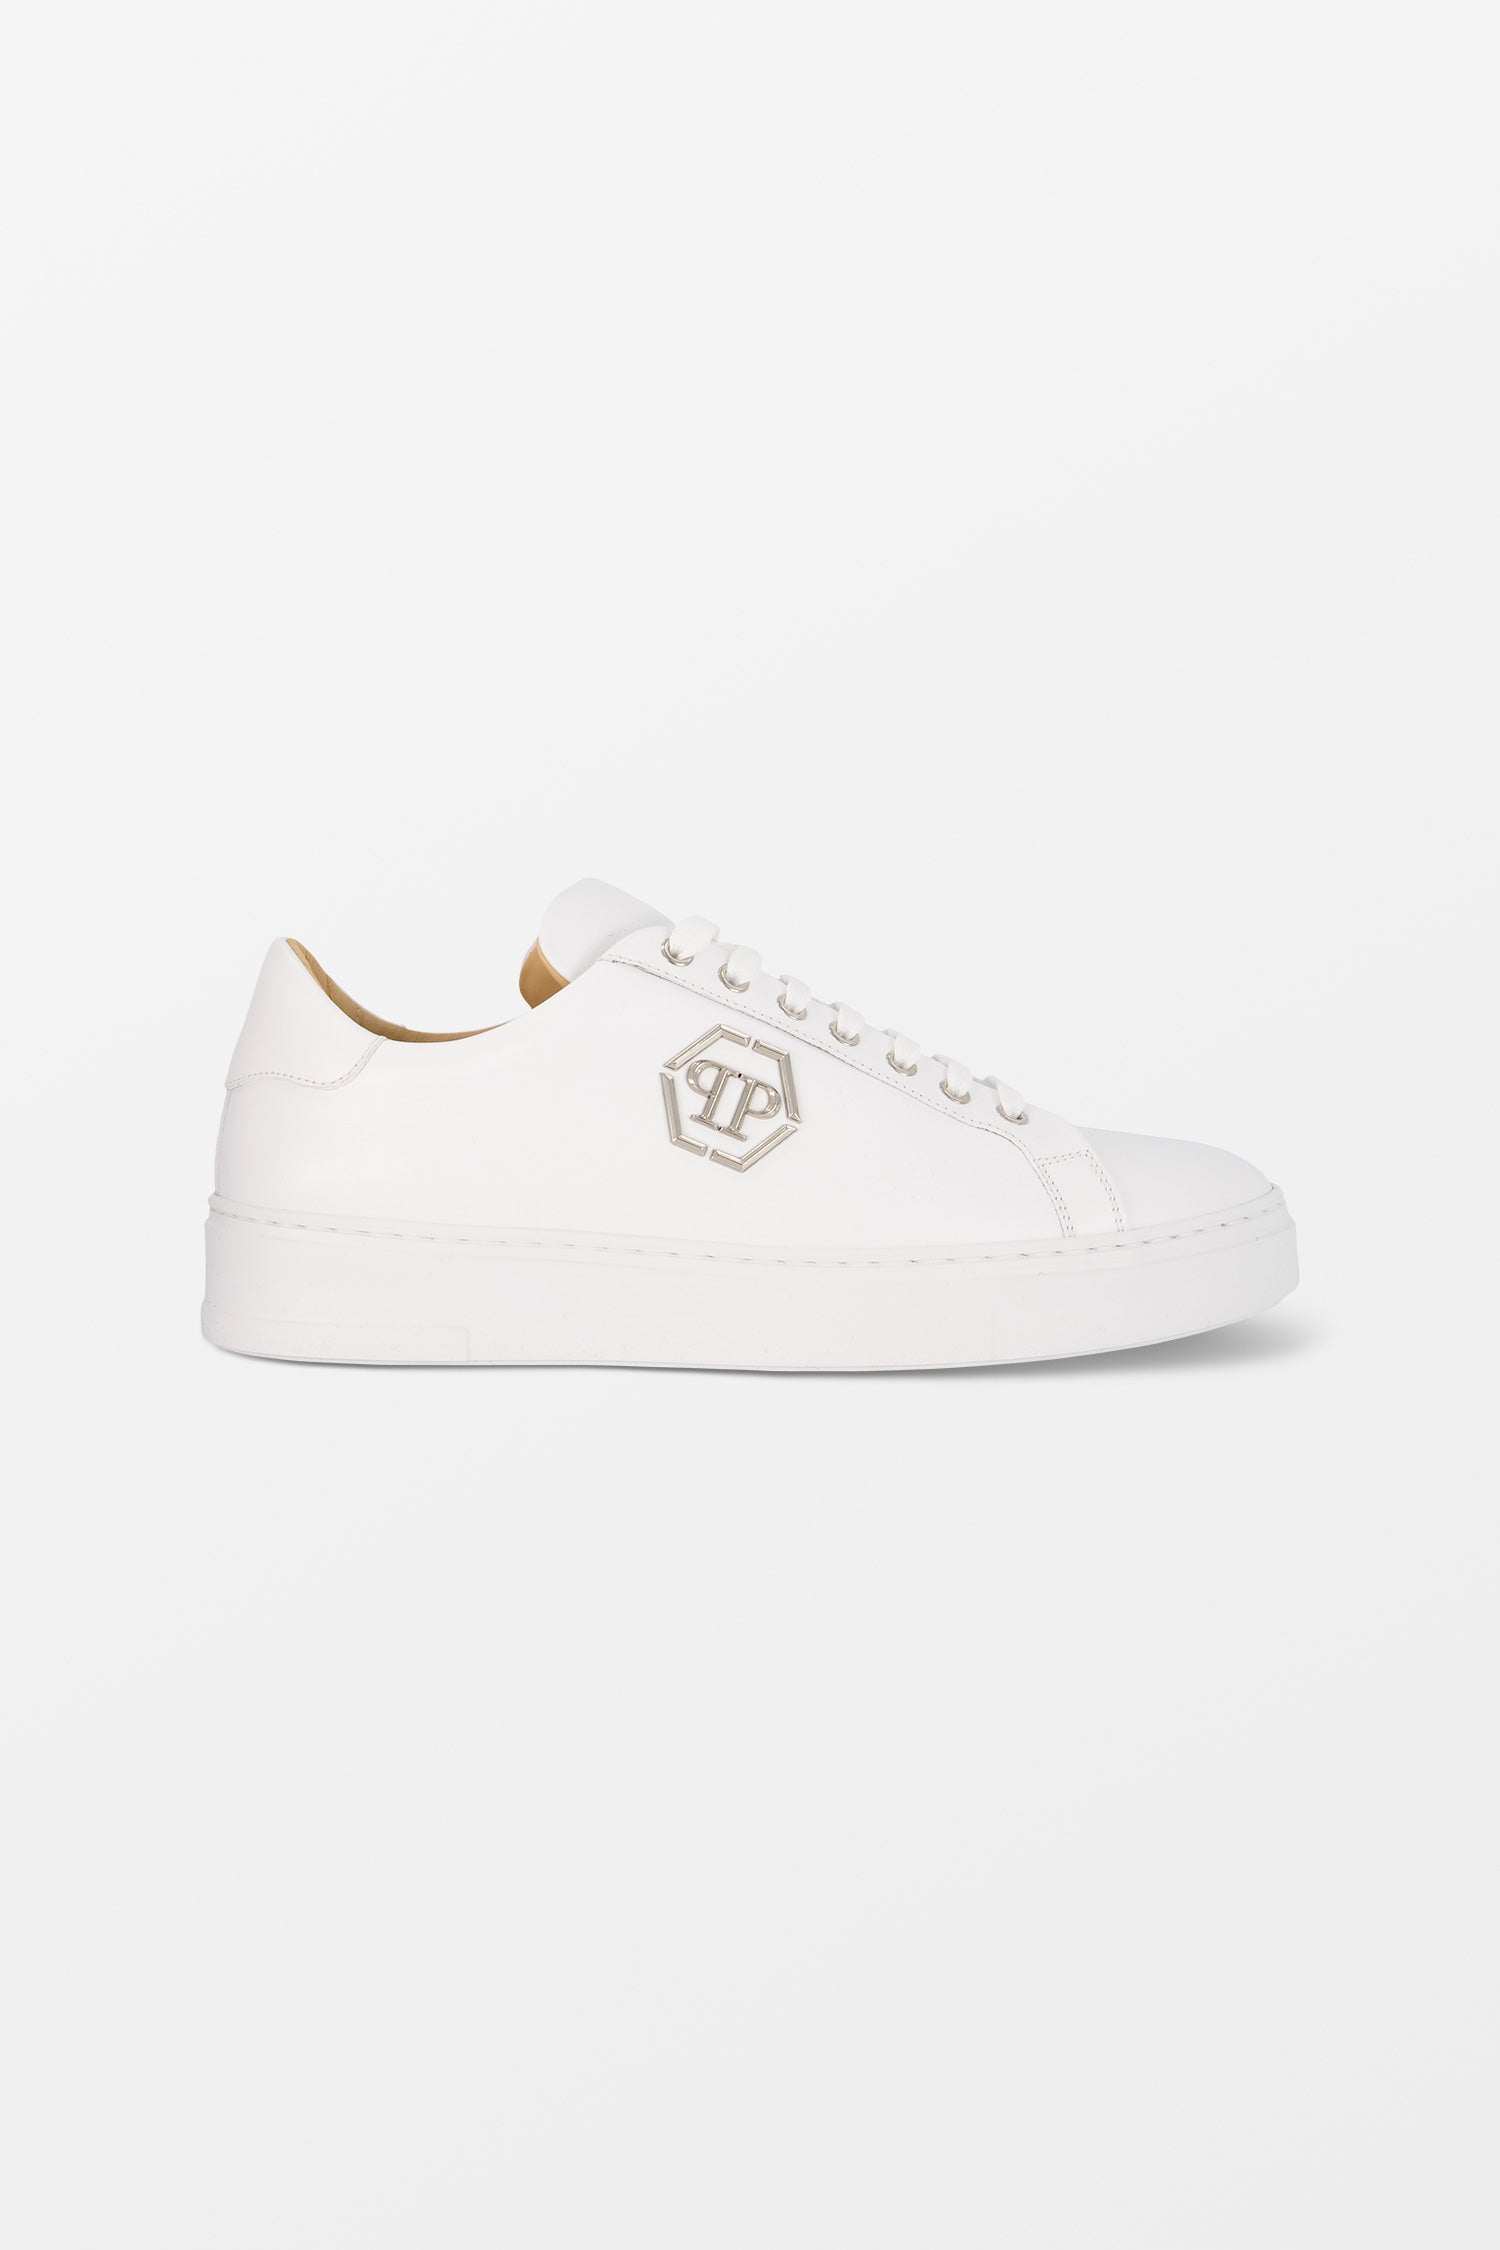 Philipp Plein White Sneakers